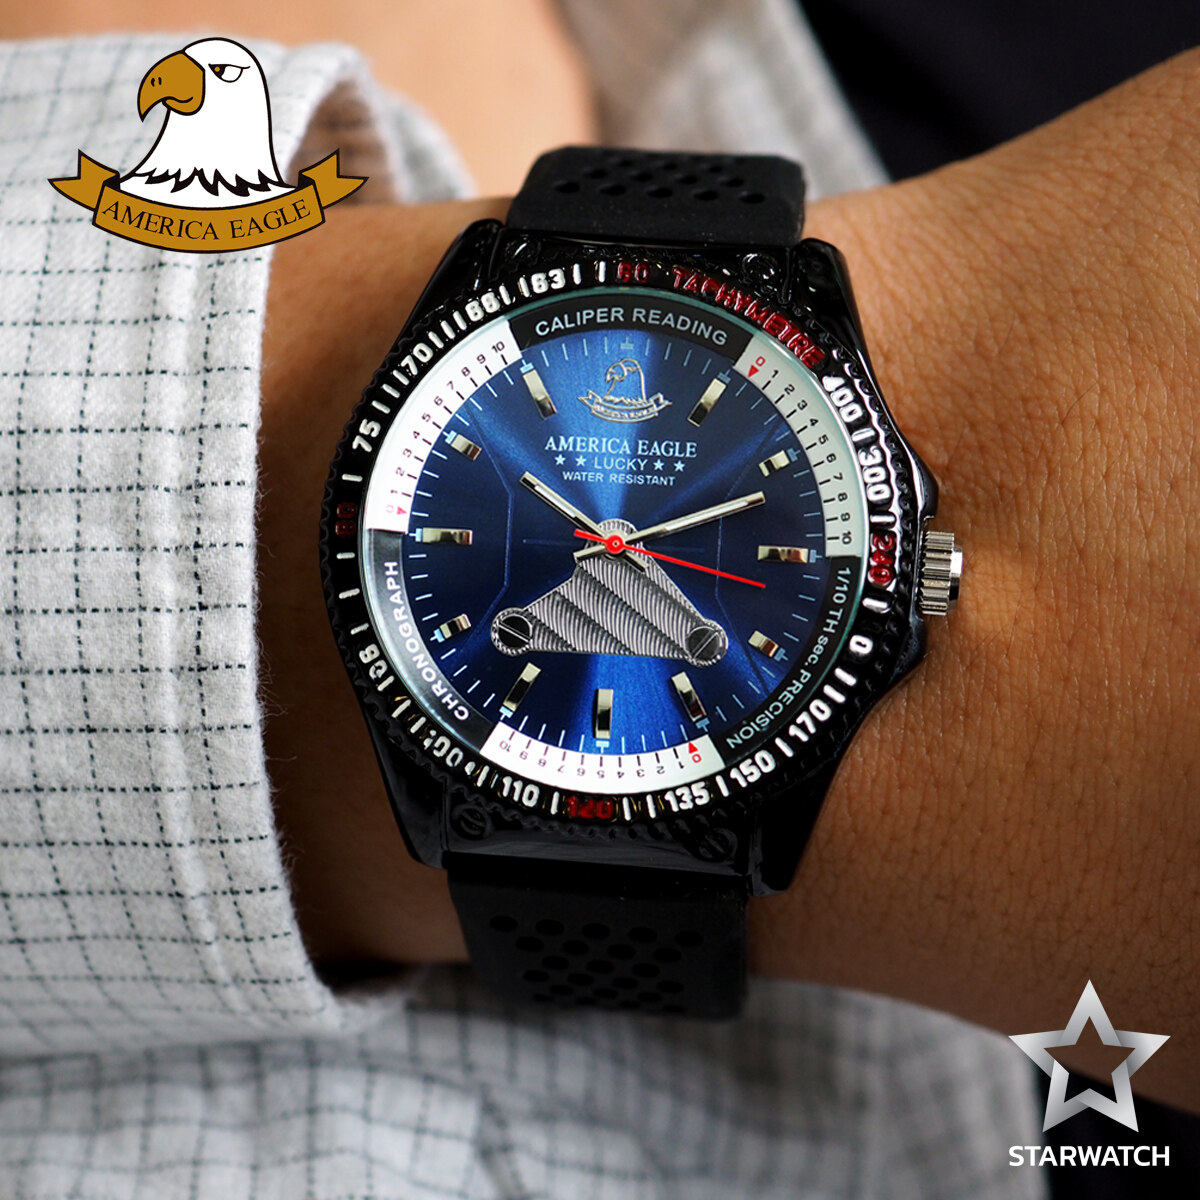 GRAND EAGLE นาฬิกาข้อมือสุภาพบุรุษ สายยางเรซิ่นรุ่น AE035G - Black / Blue